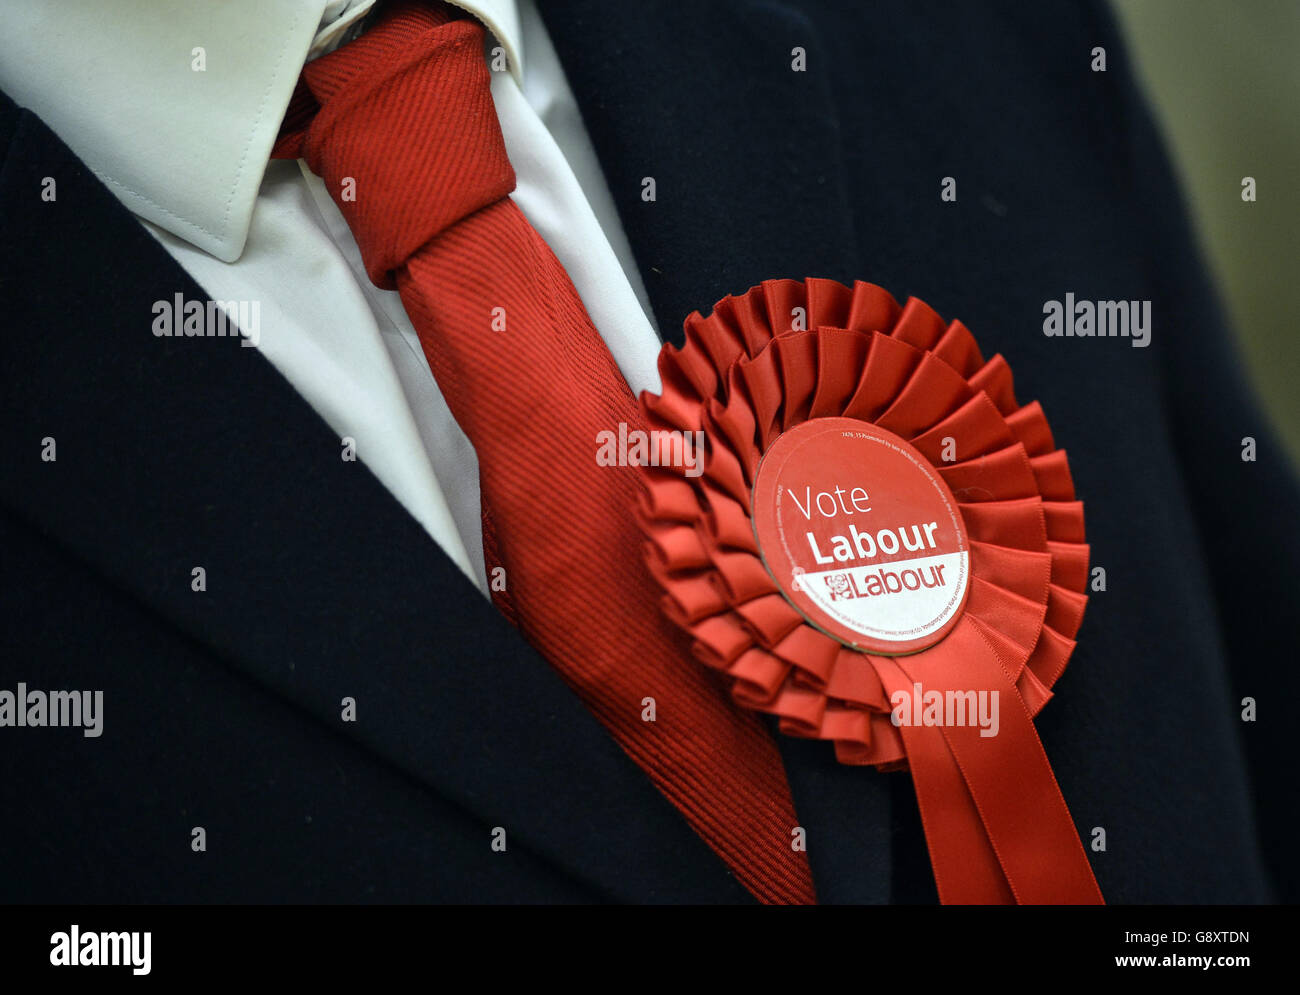 Ein Anhänger der Labour Party trägt eine Rosette zur Unterstützung der politischen Partei während der Wahlzählung für Basildon im Sportdorf in Basildon, Essex. Stockfoto